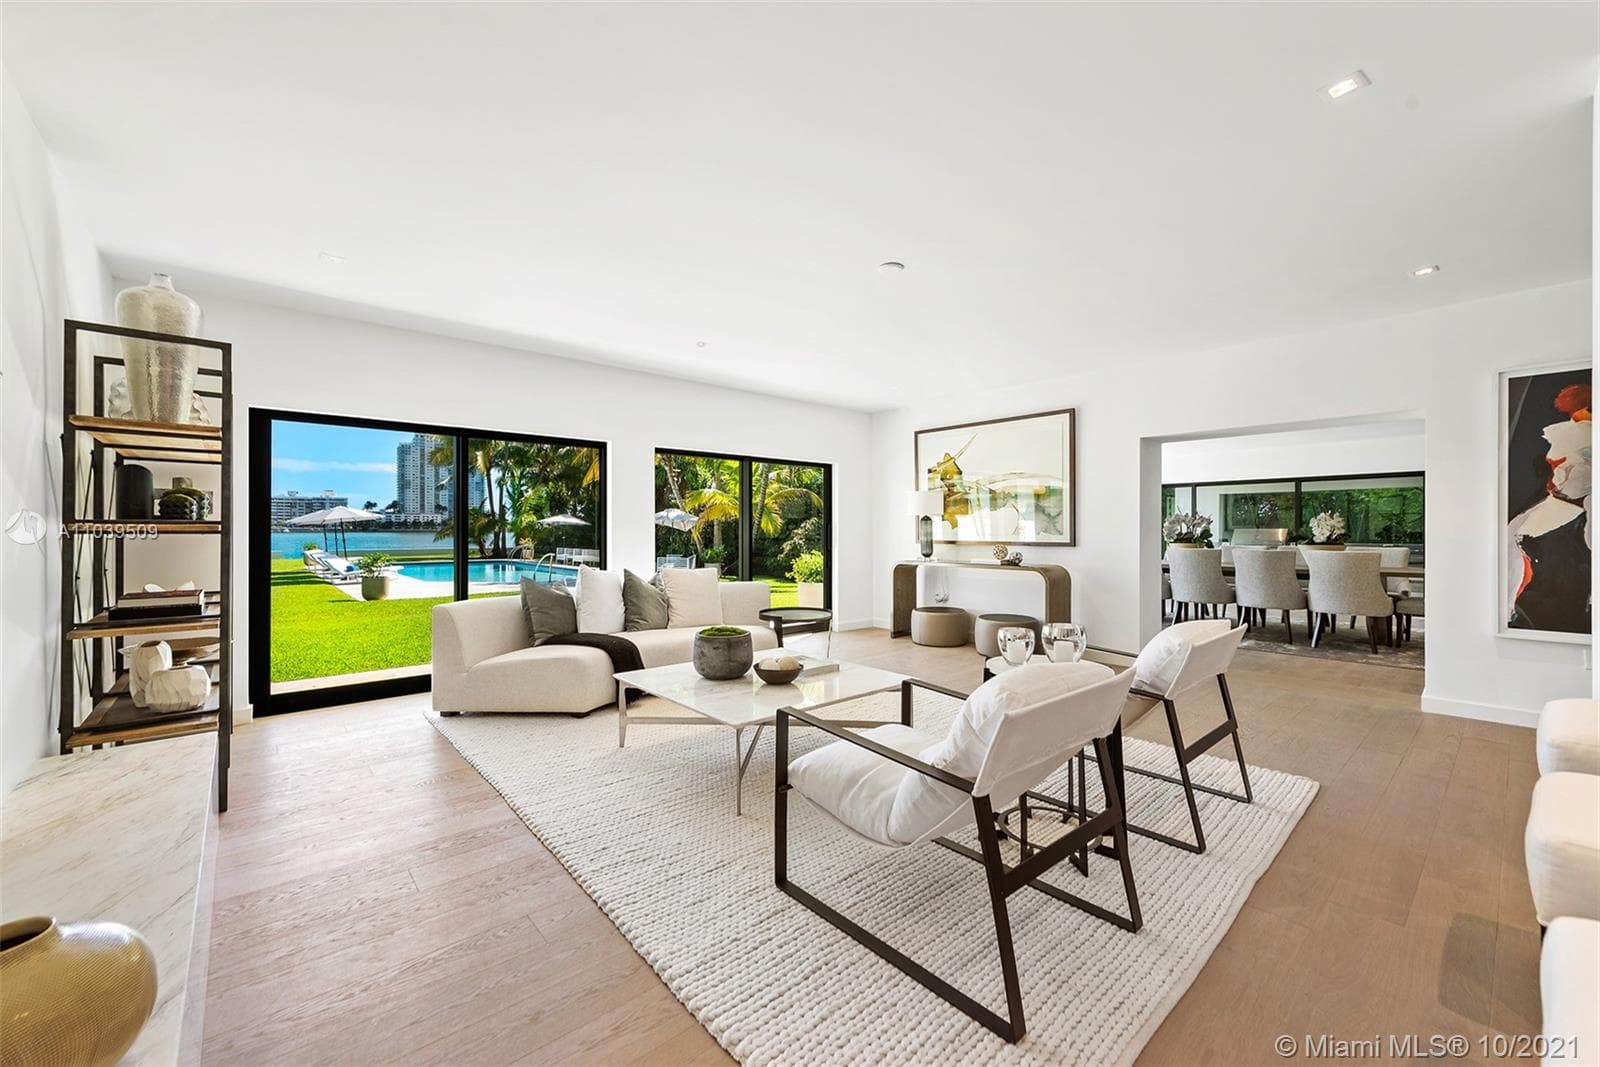 9 Bedroom Condominium For Sale Miami Beach Lp09826 1c12c29cd5bd4800.jpg